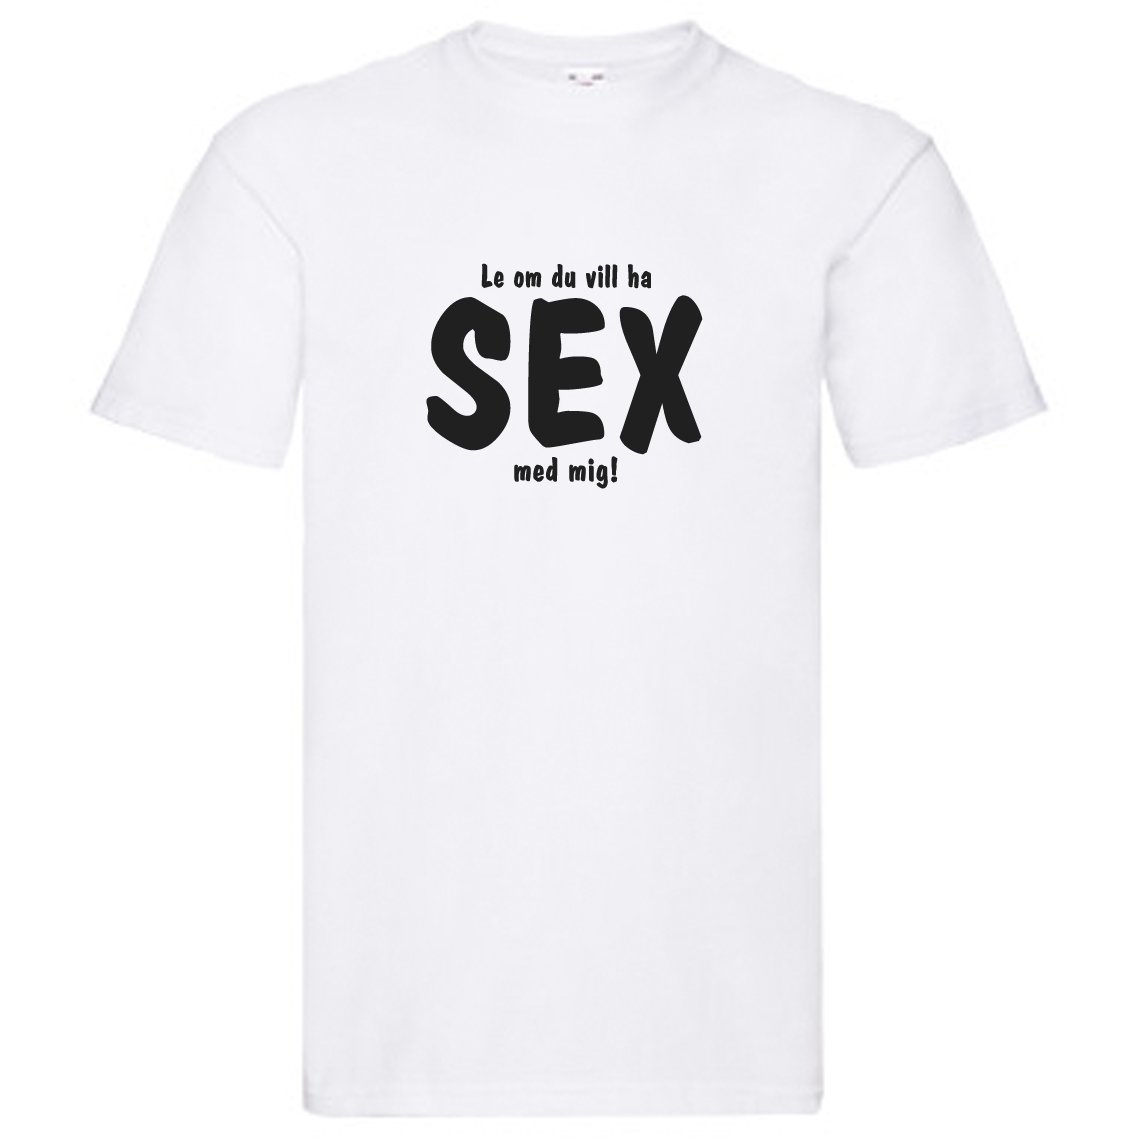 T-Shirt - Le om du vill ha sex med mig!